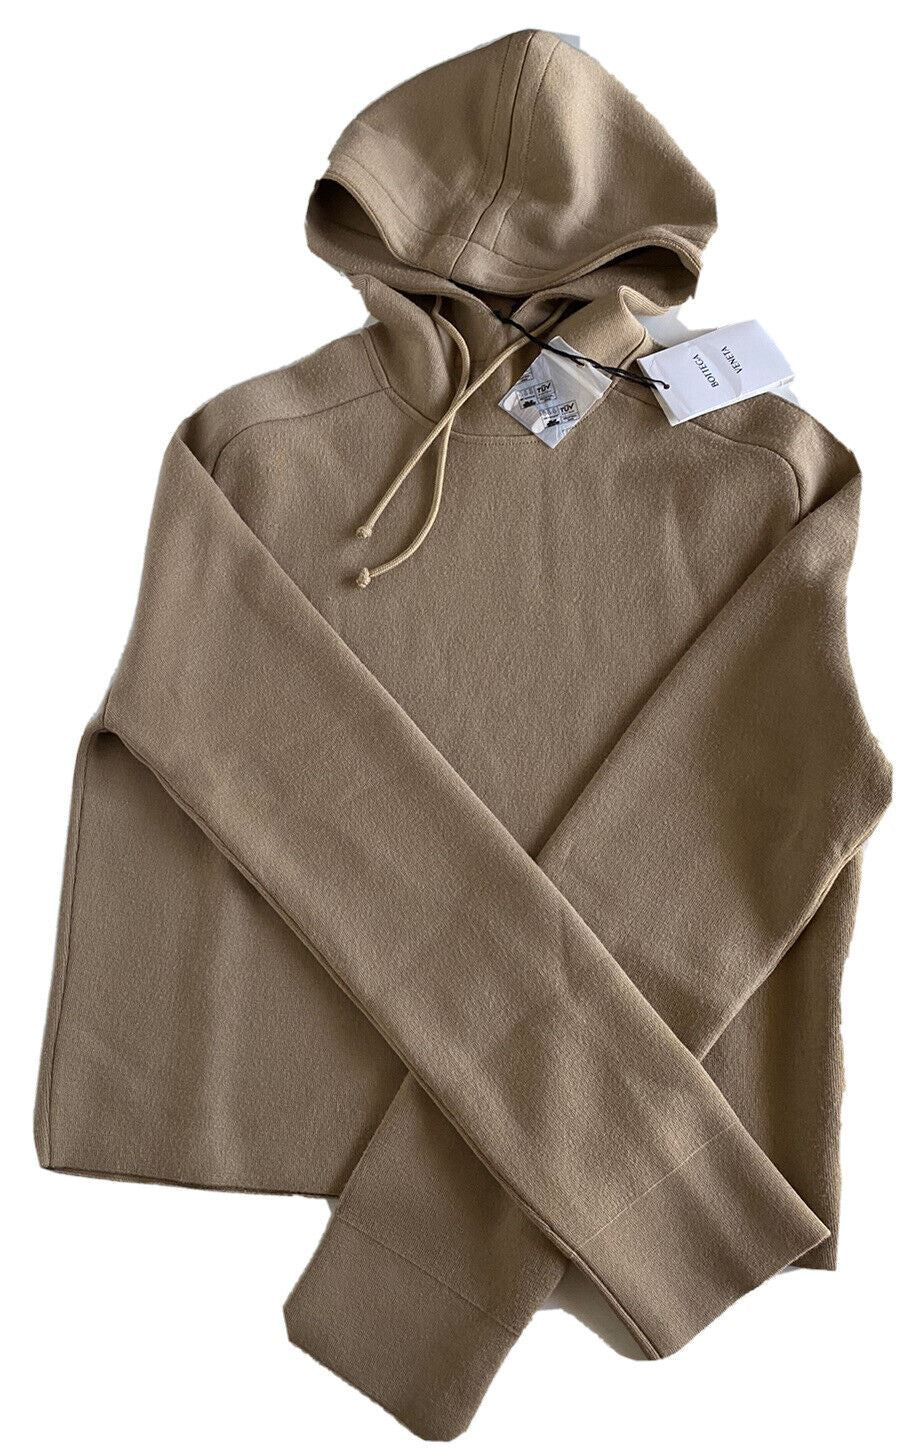 NWT $1750 Женская толстовка с капюшоном Bottega Veneta Шерстяной свитер Бежевый XL 647529 Италия 